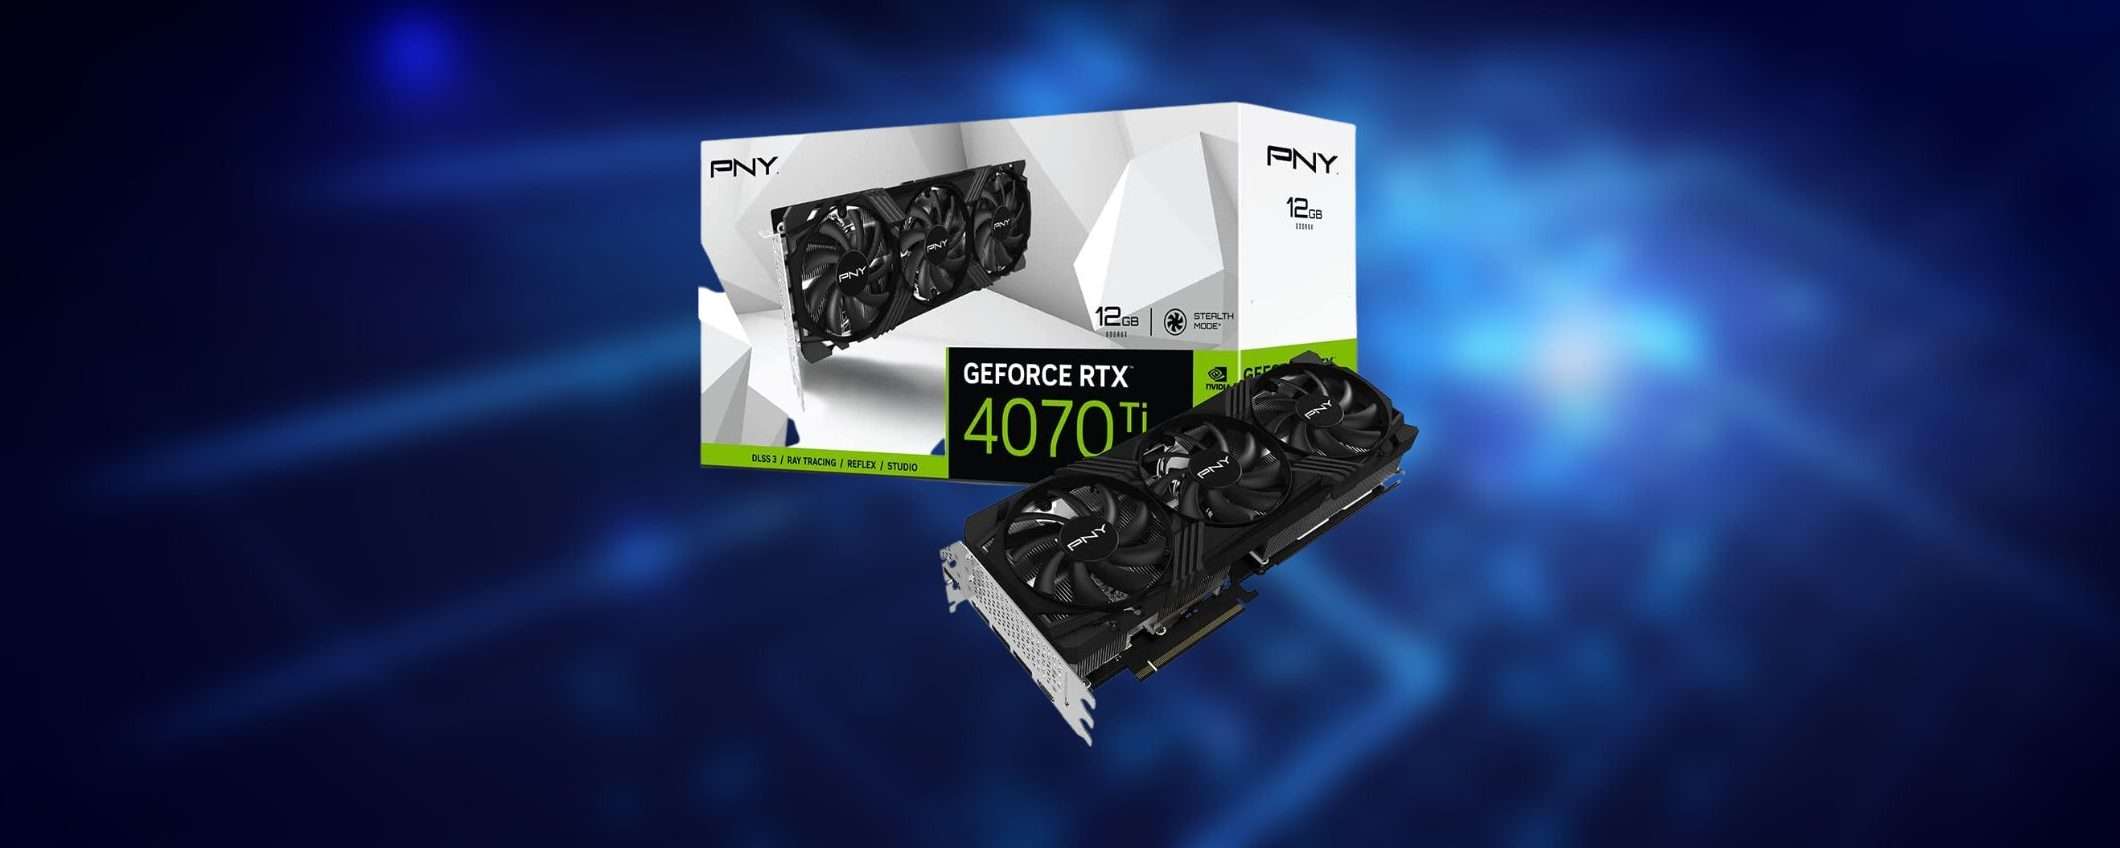 GeForce RTX 4070Ti 12GB è DISPONIBILE su Amazon e anche IN OFFERTA